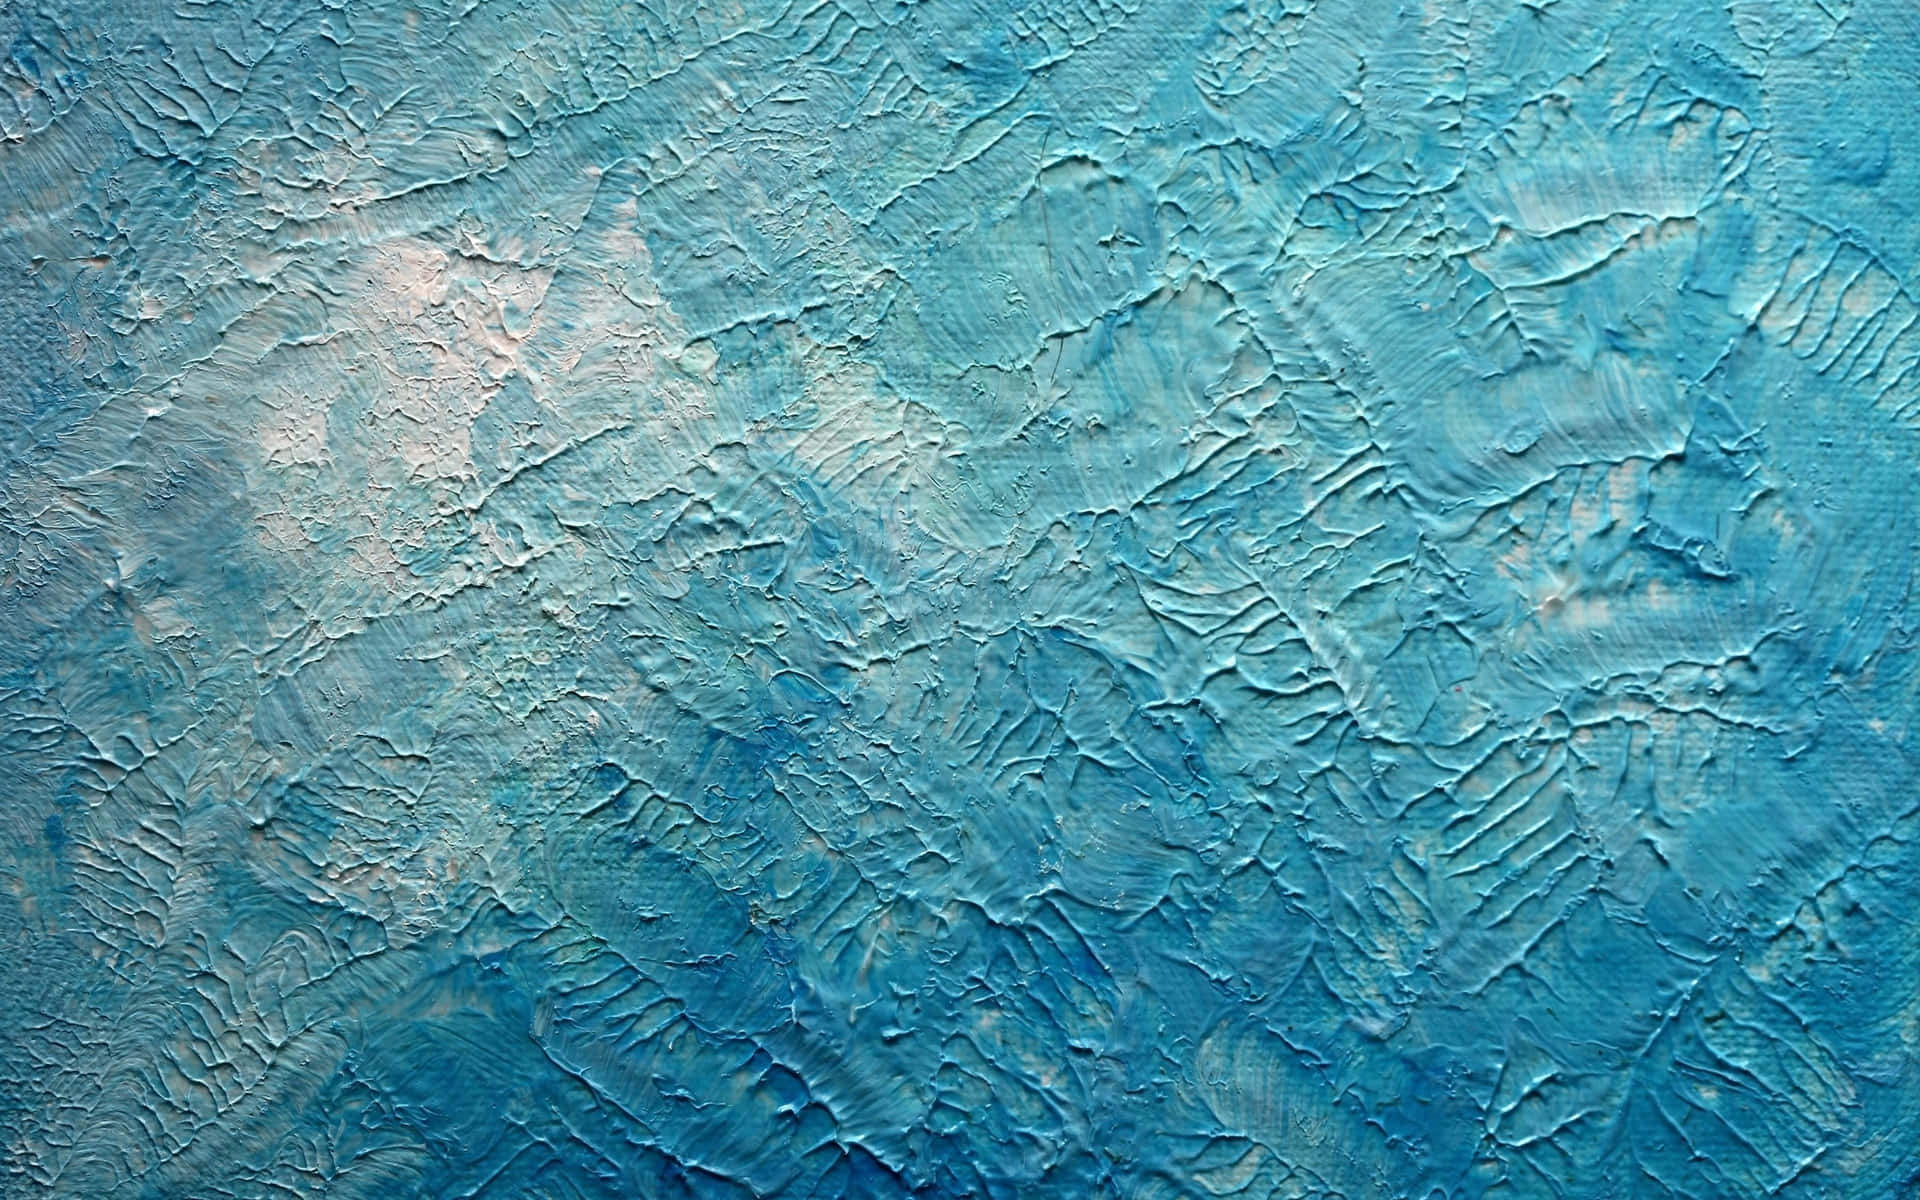 Unapintura De Un Cuadro Azul Y Blanco.